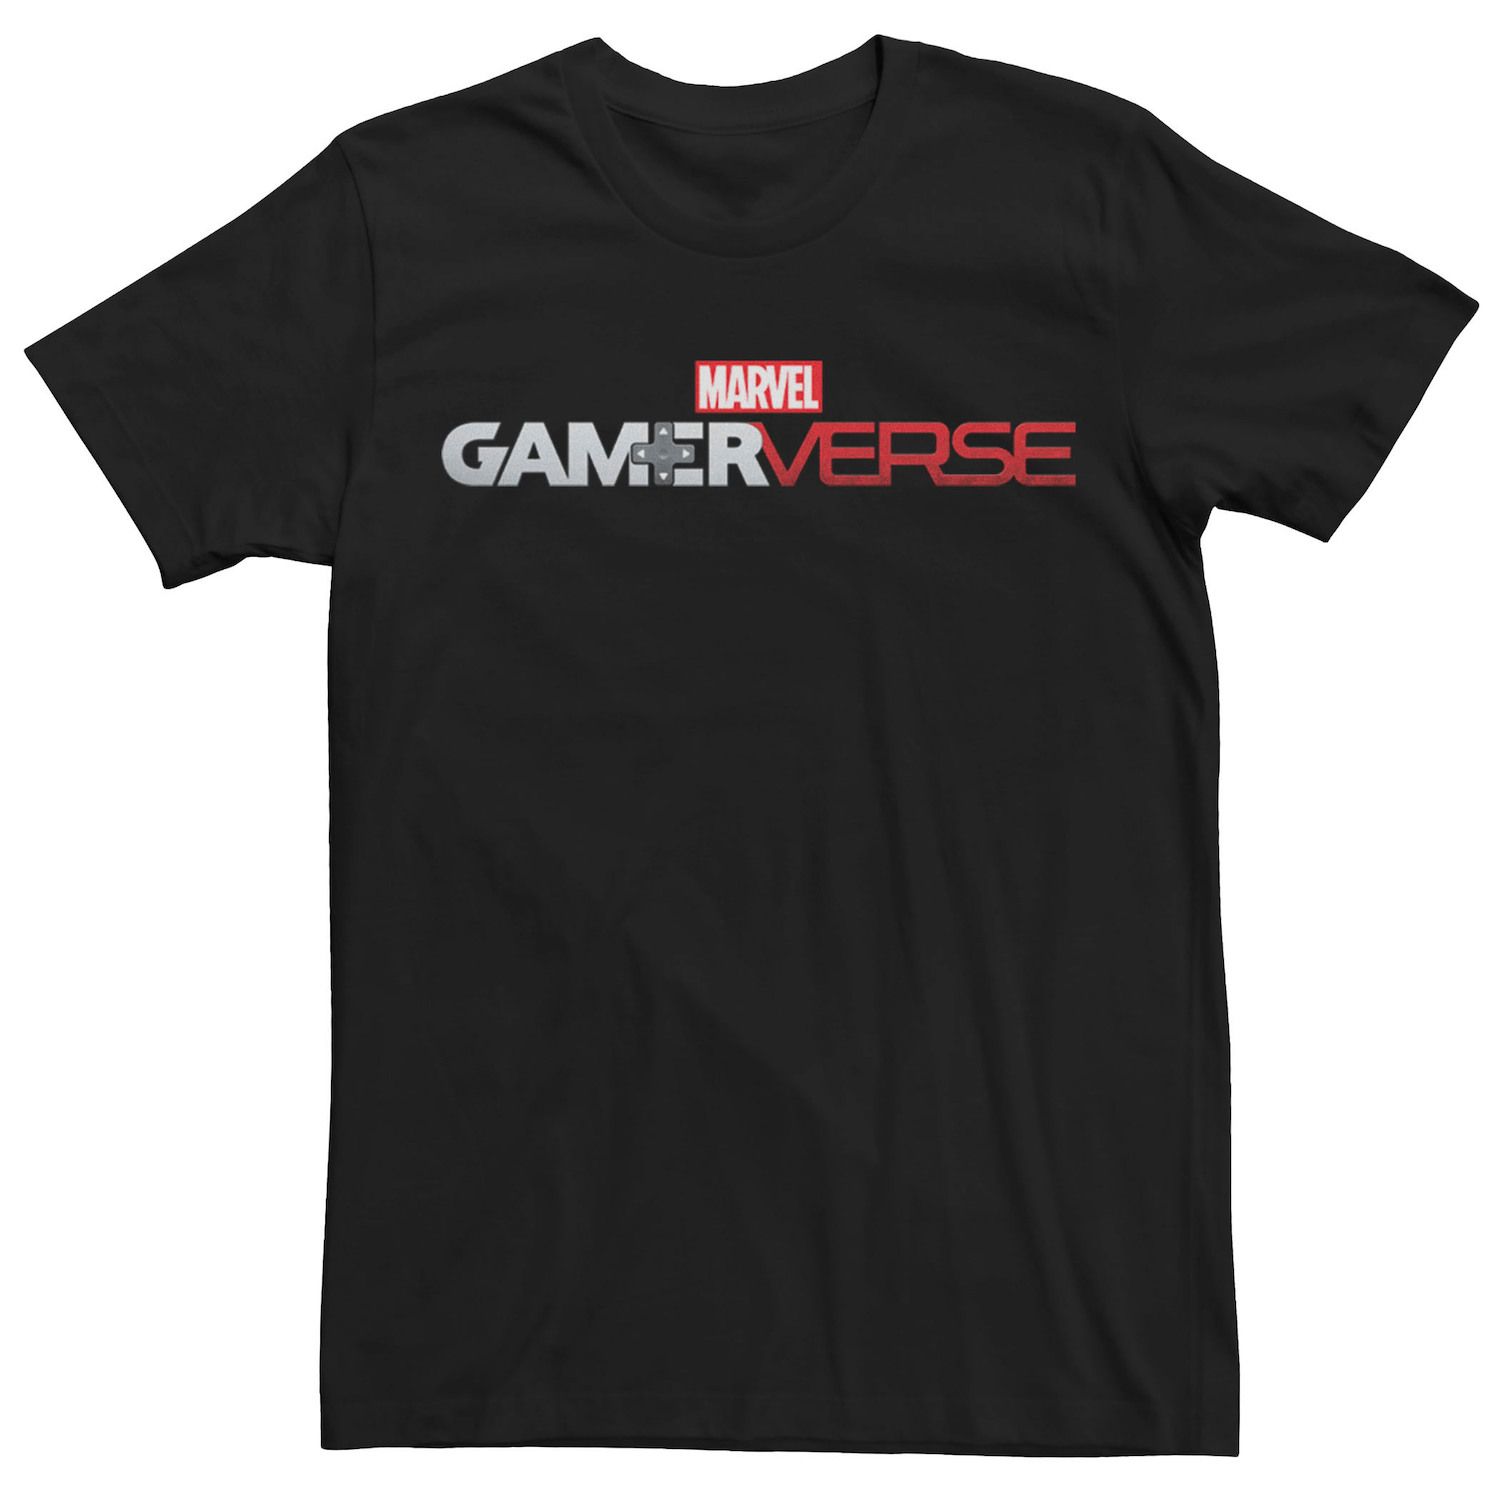 Мужская футболка с простым логотипом Marvel Gamerverse Licensed Character